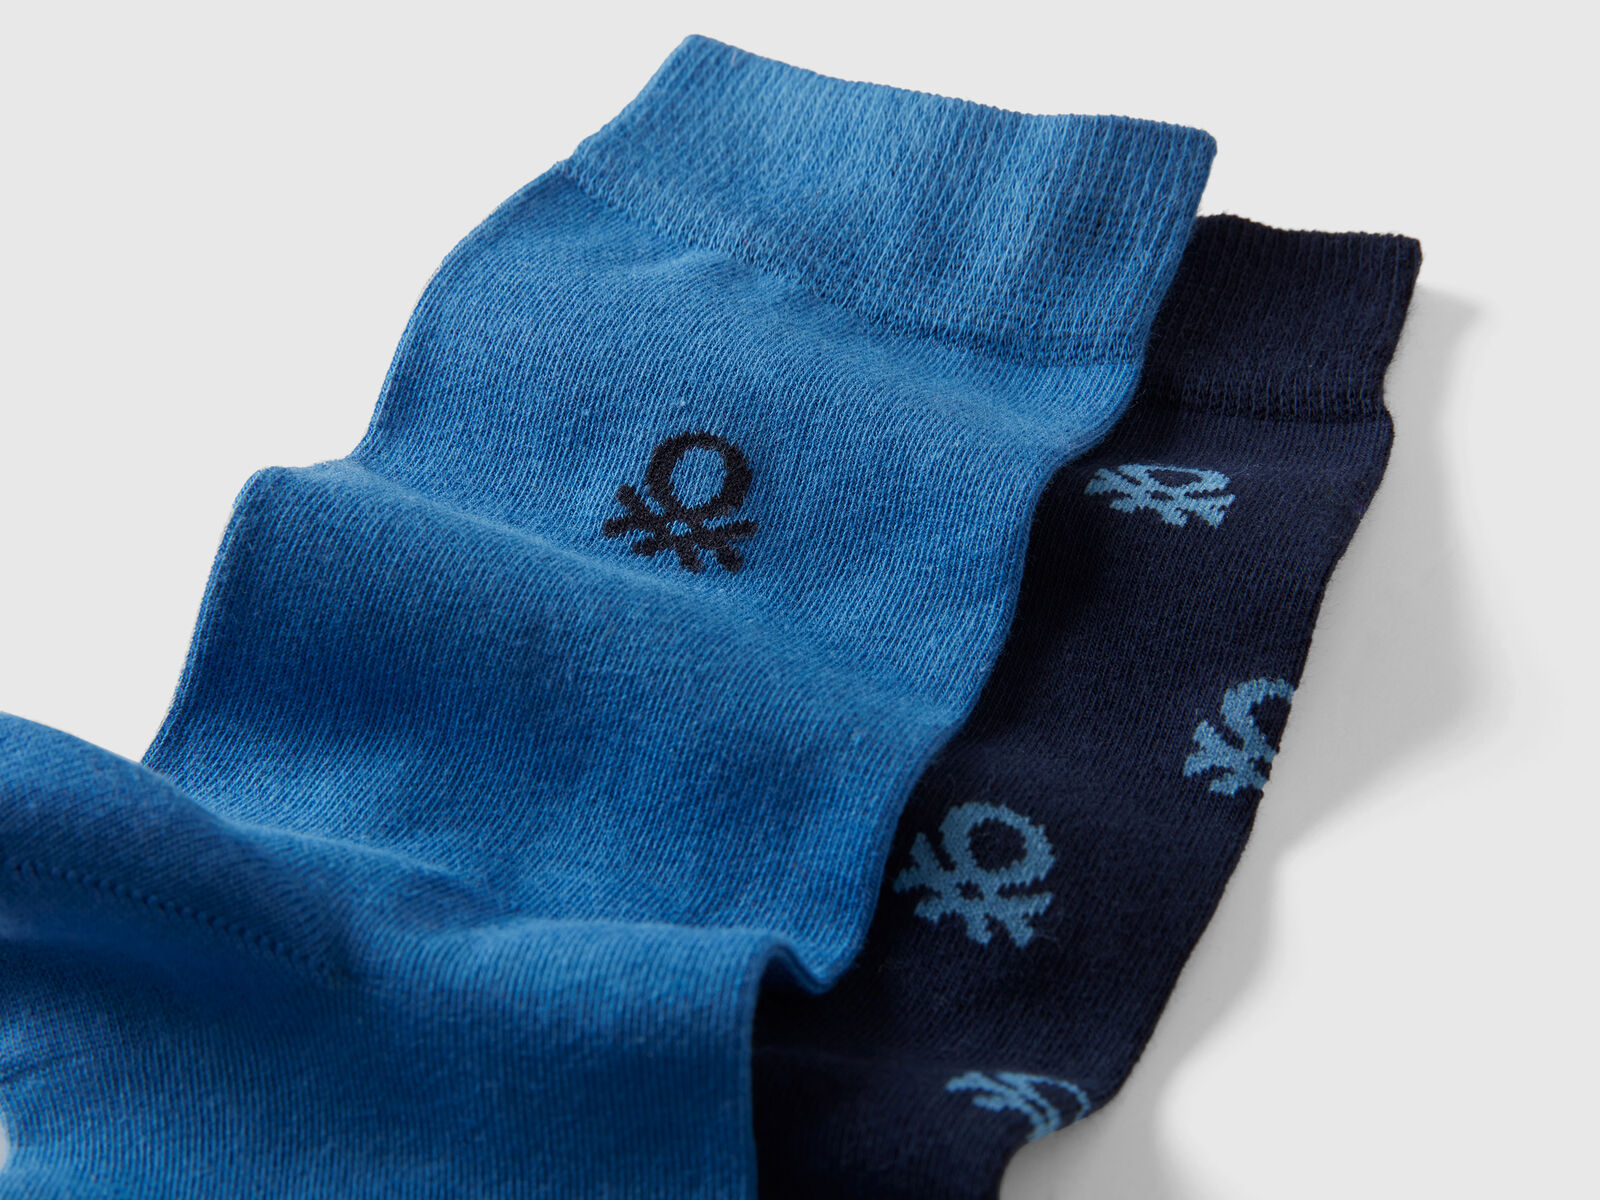 Les chaussettes tons de bleu logo Emballage de 3